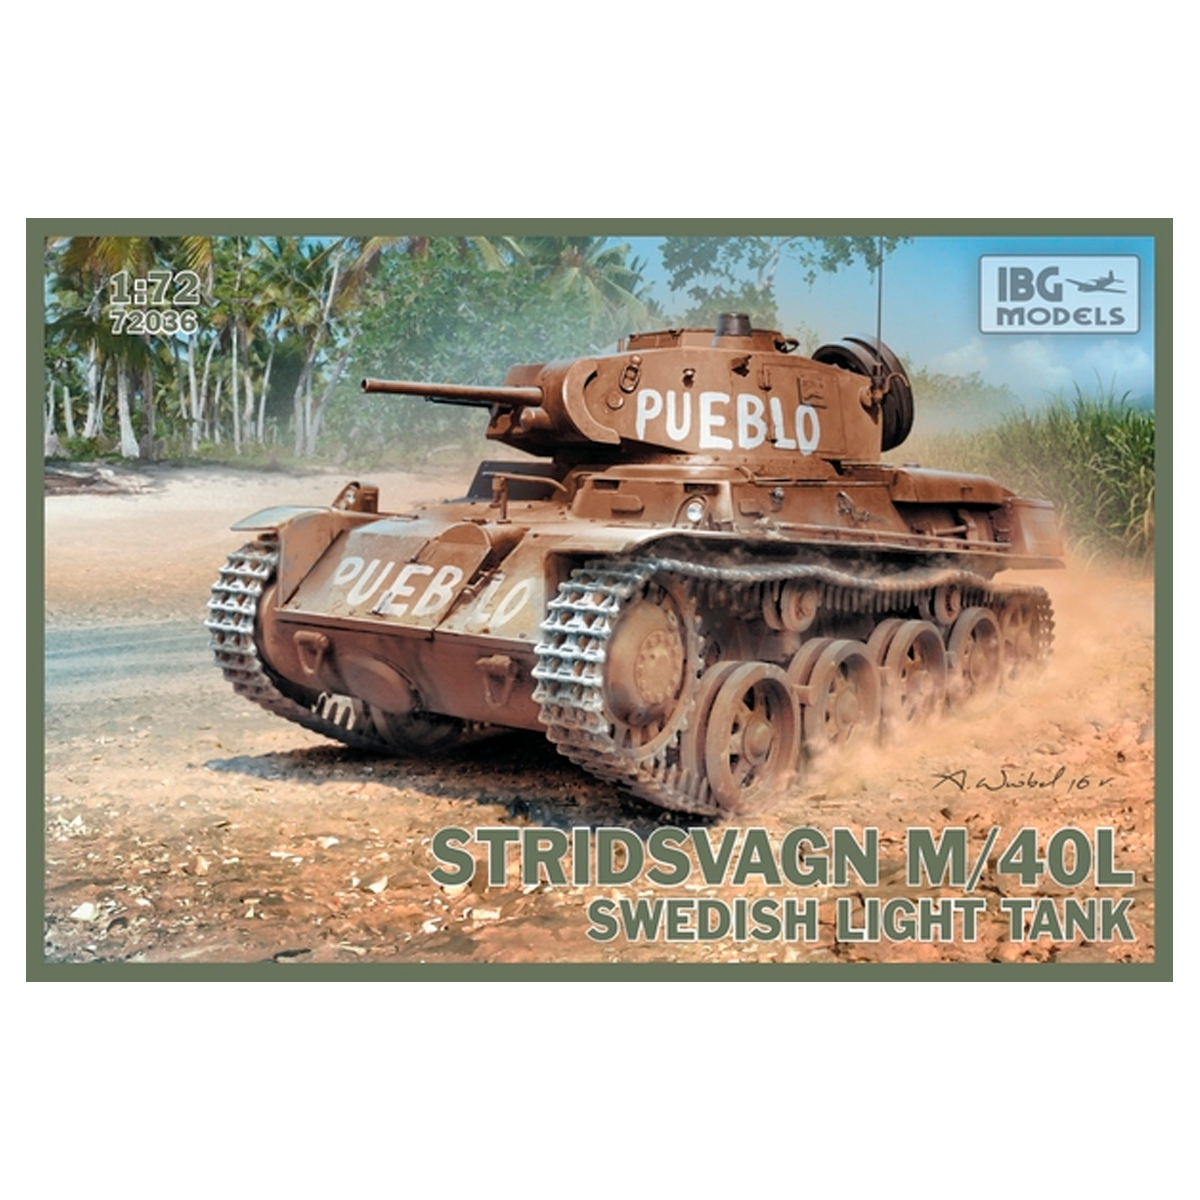 Stridsvagn M/40 L Swedish light tank 1/72